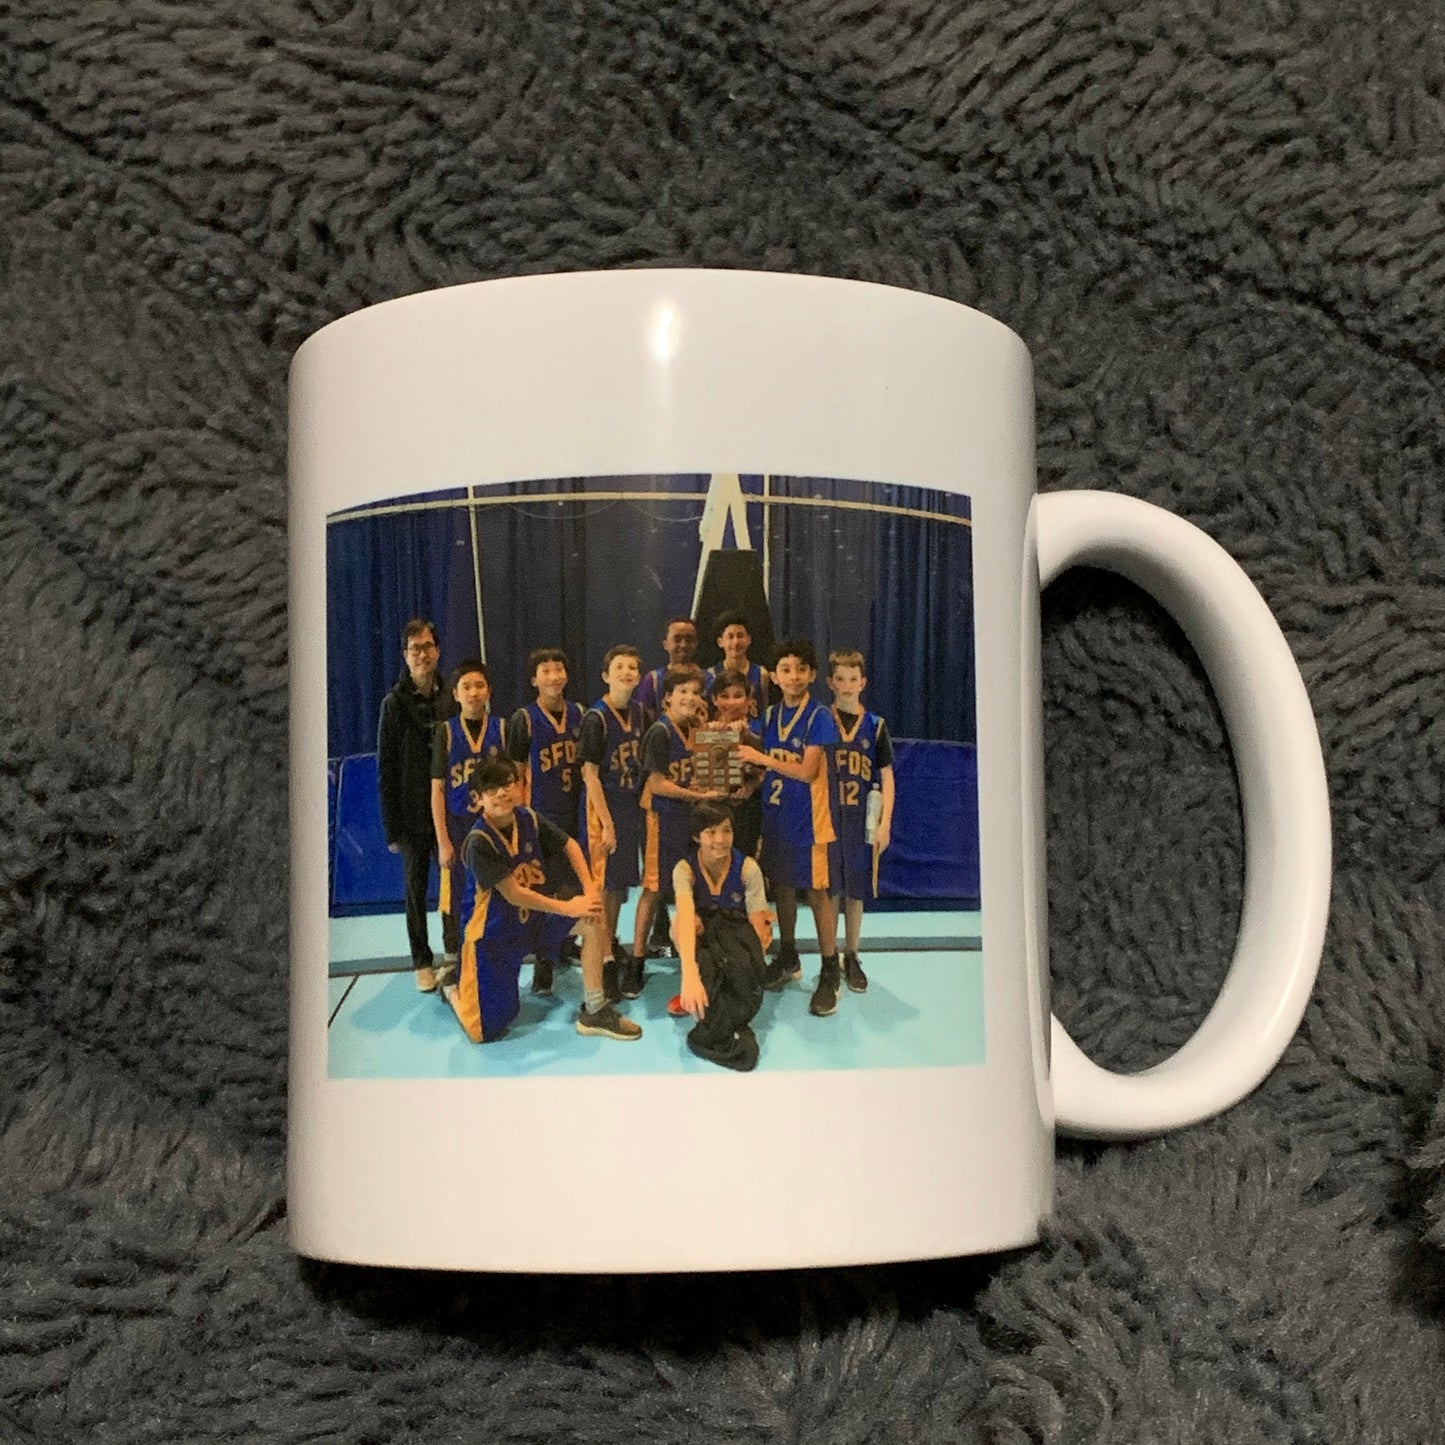 Custom  Coach Appreciation Coffee Mug - Unique Photo Gifts for Sports Dad  - 11 oz.